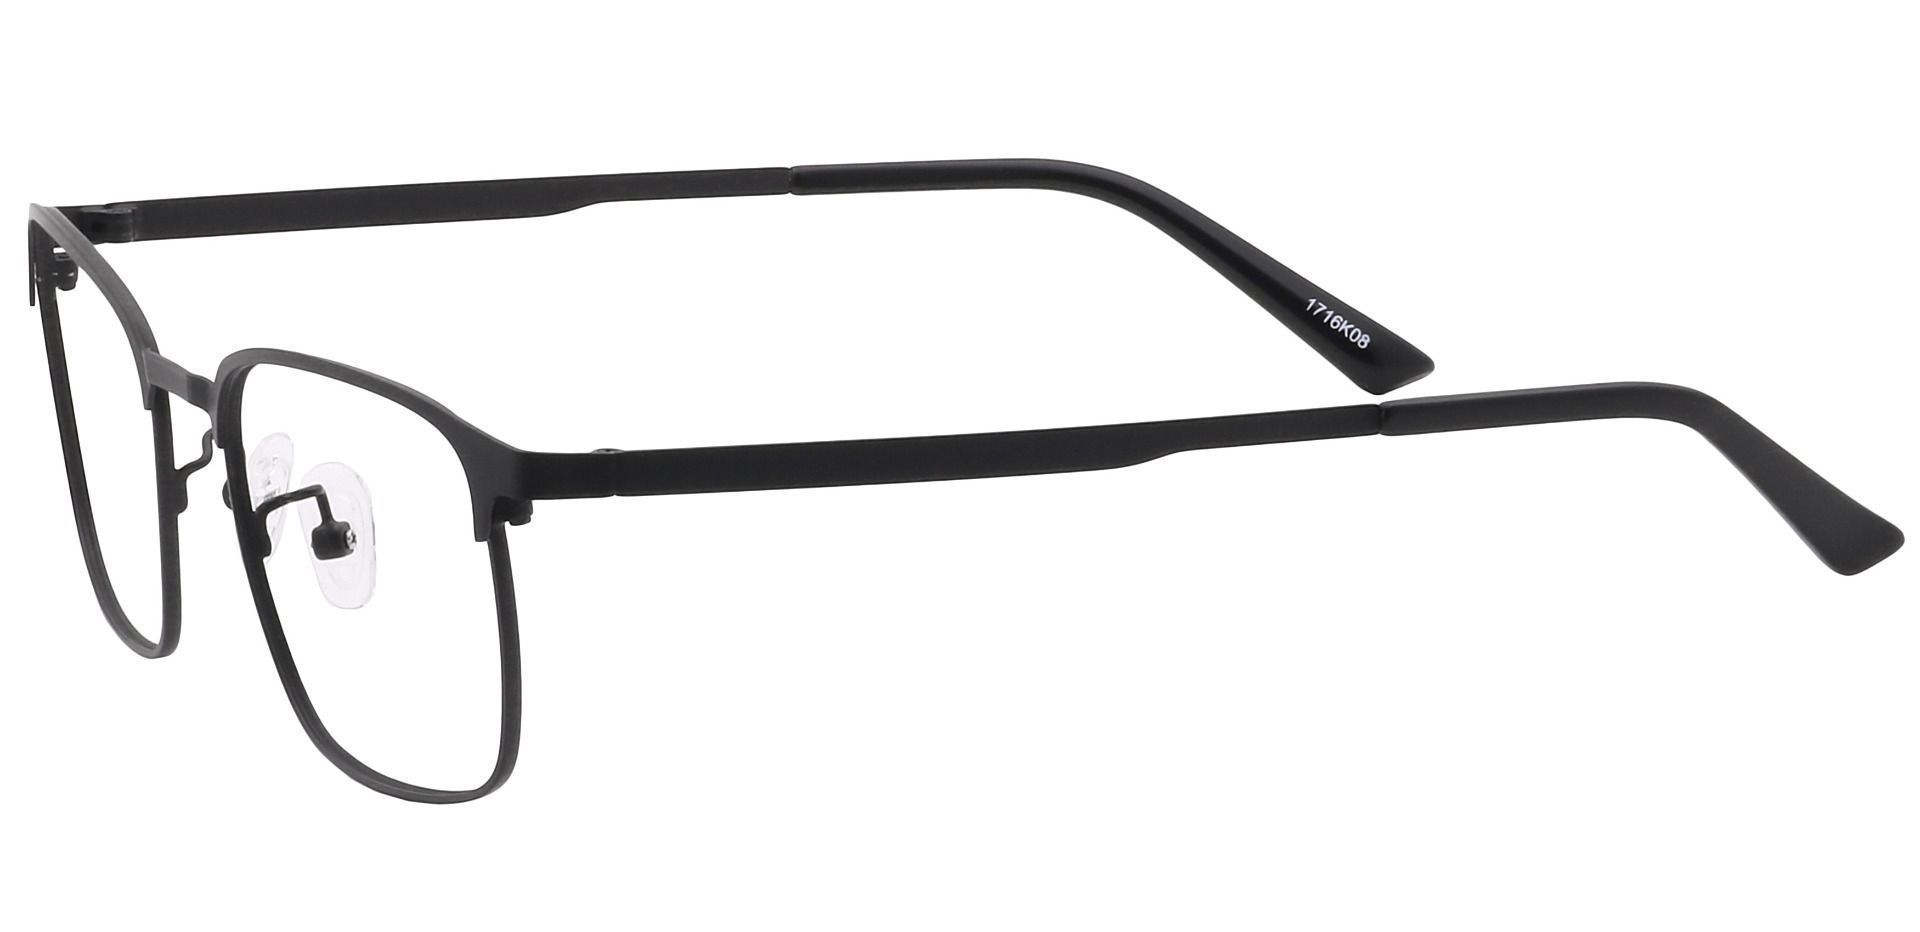 Kingston Square Eyeglasses Frame - Black